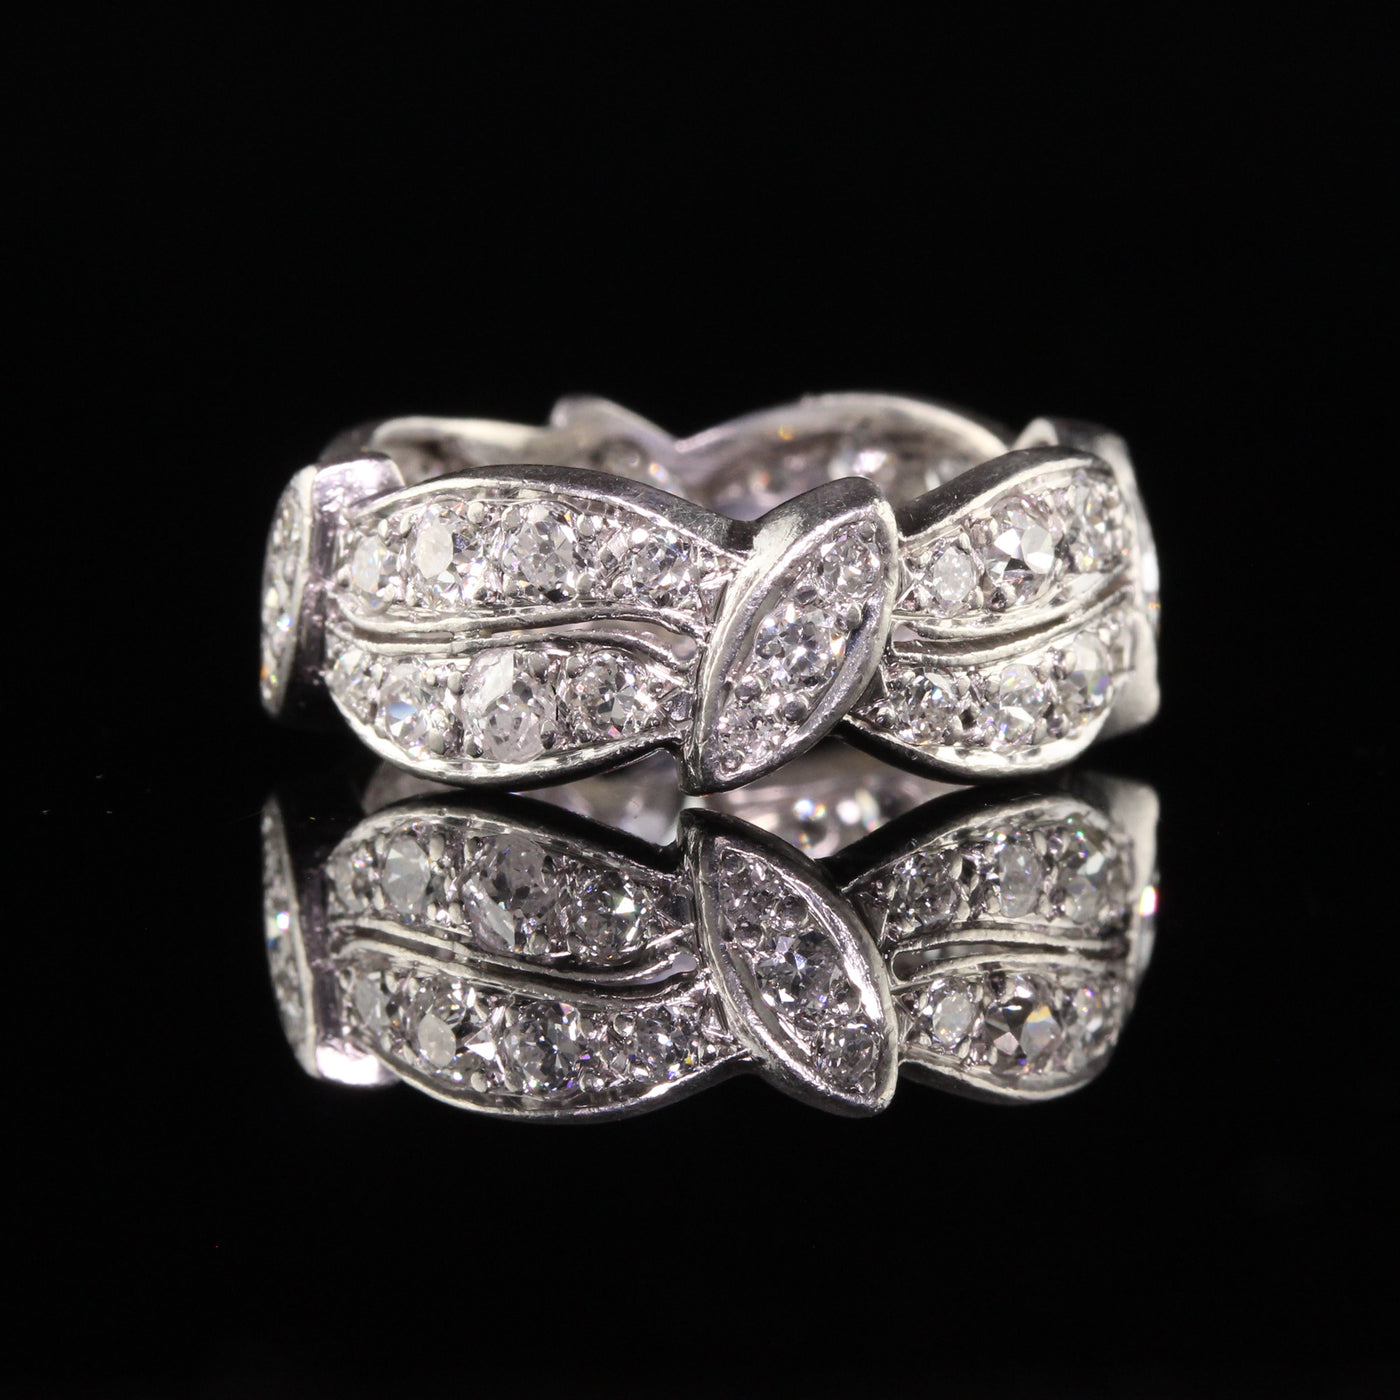 Antique Art Deco Platinum Old European Marquise Diamond Eternity Ring - Size 6 3/4